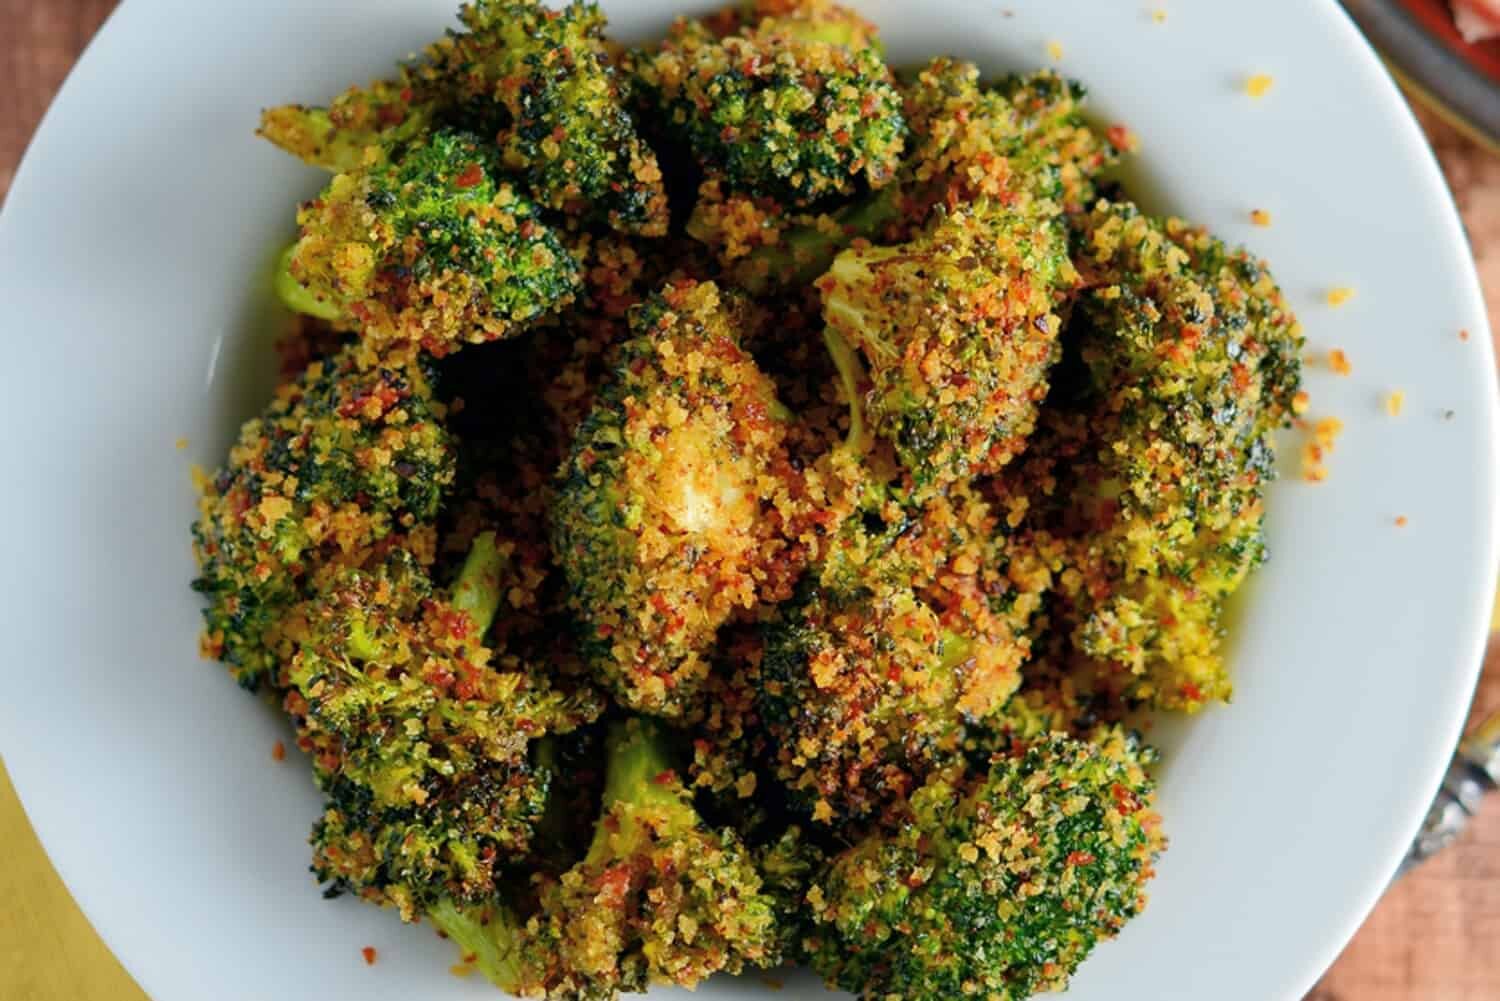 Crunchy Baked Broccoli